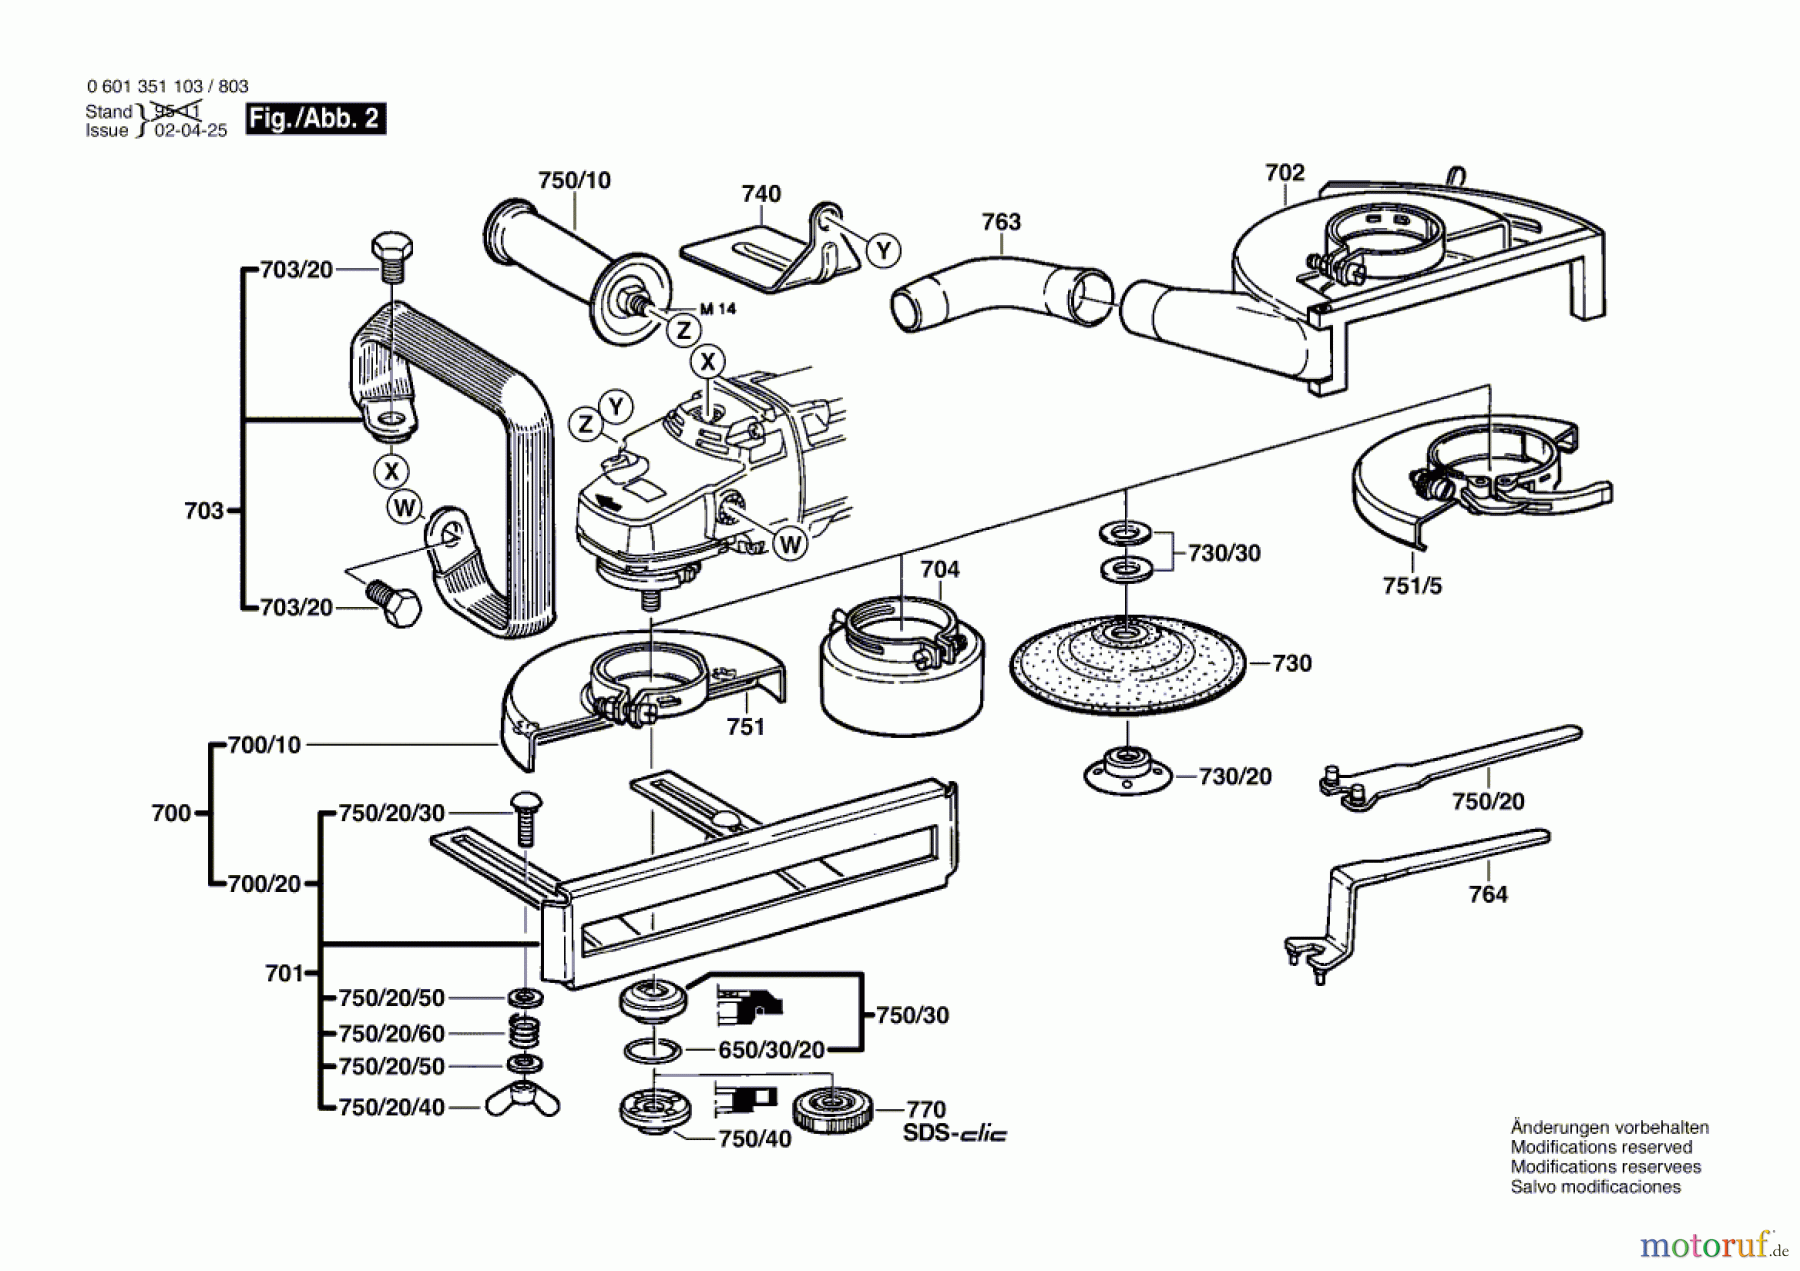  Bosch Werkzeug Winkelschleifer GWS 19-180 Seite 2